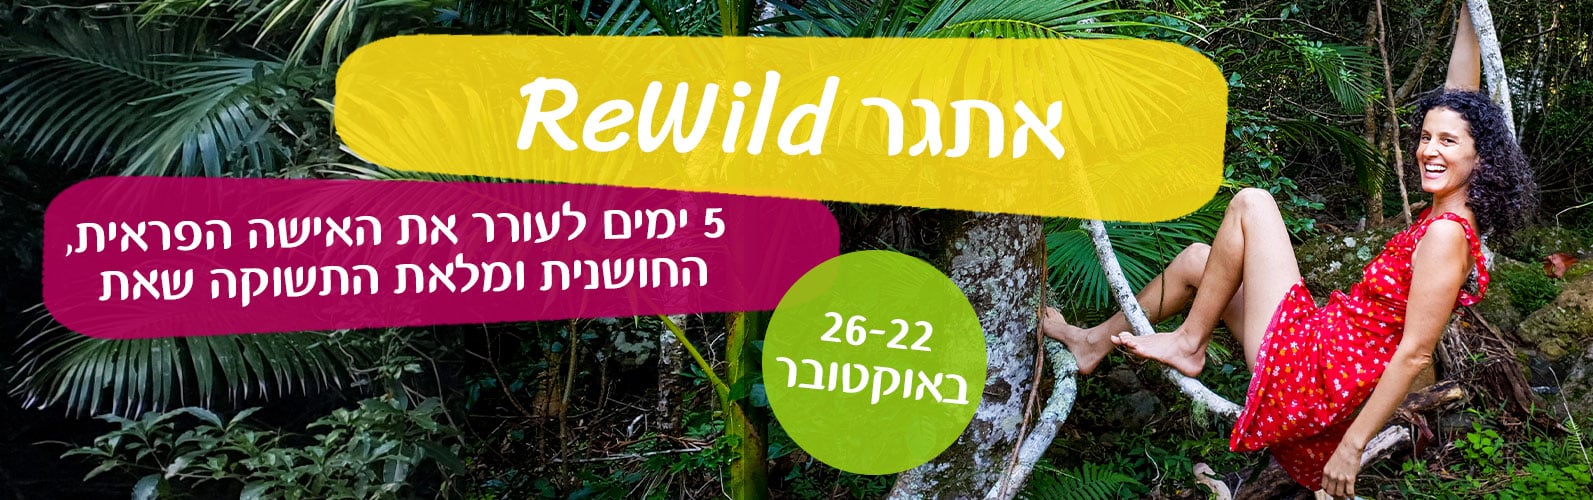 אתגר ריווילד rewild